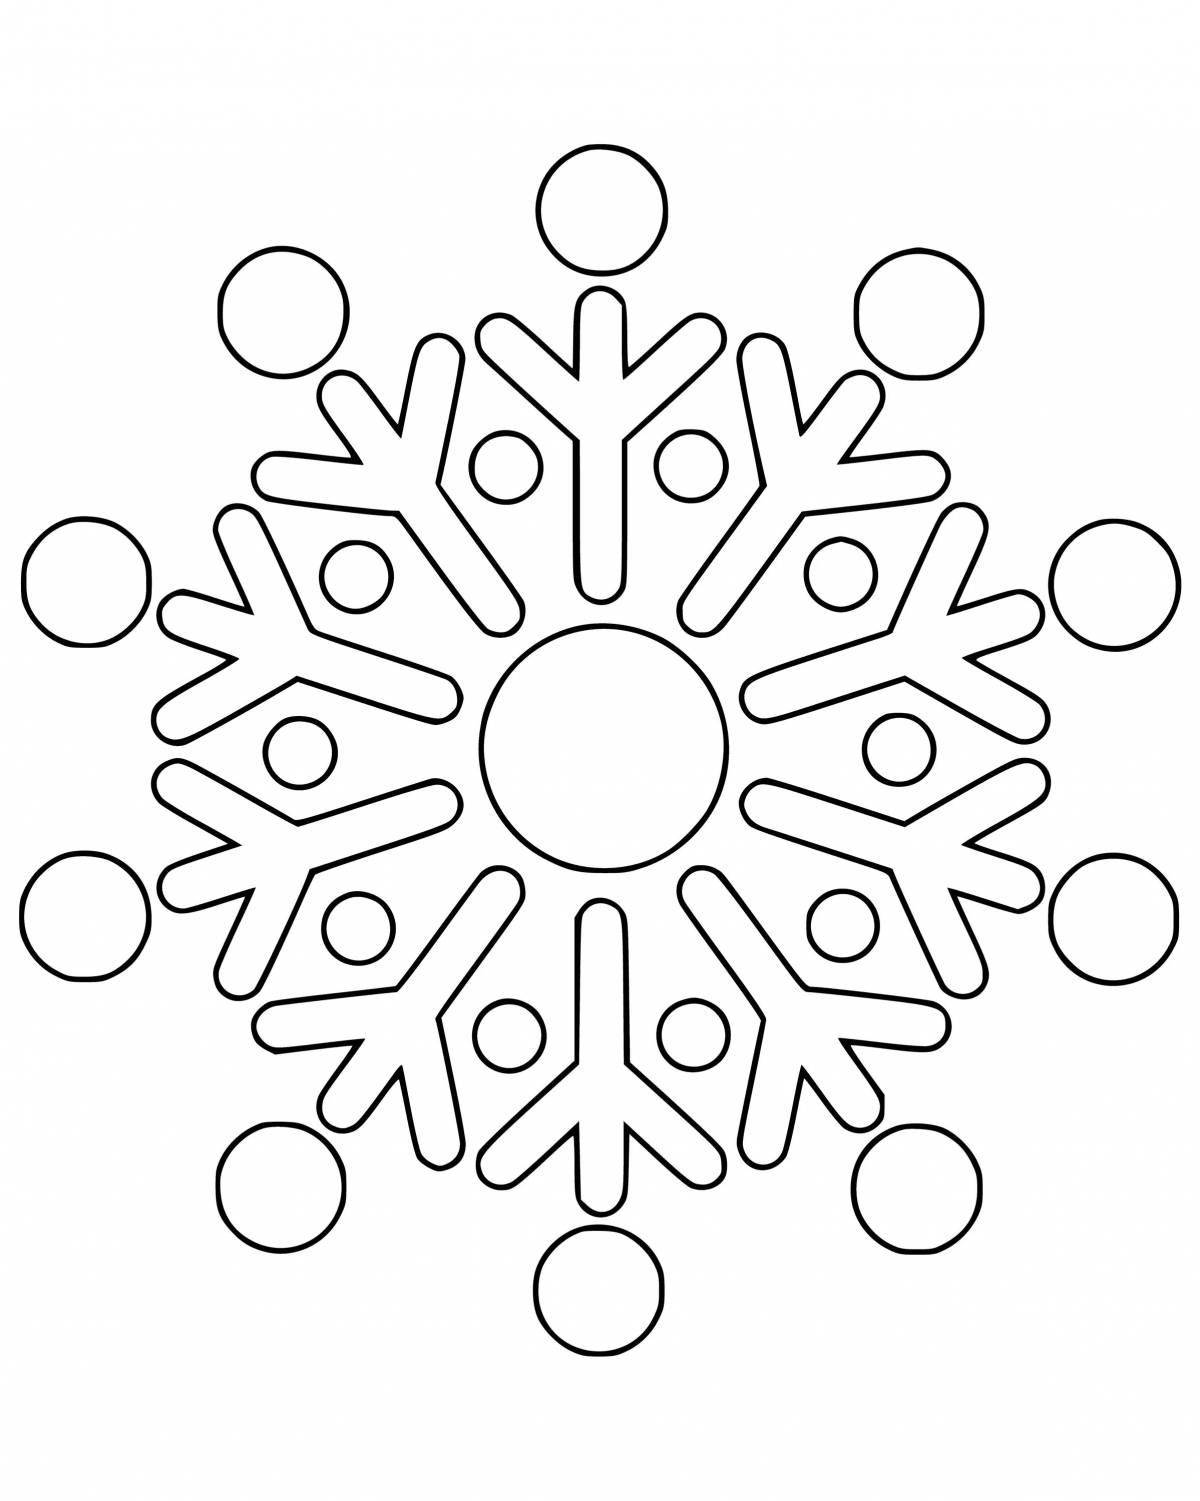 Joyful coloring of snowflakes for children 4-5 years old in kindergarten